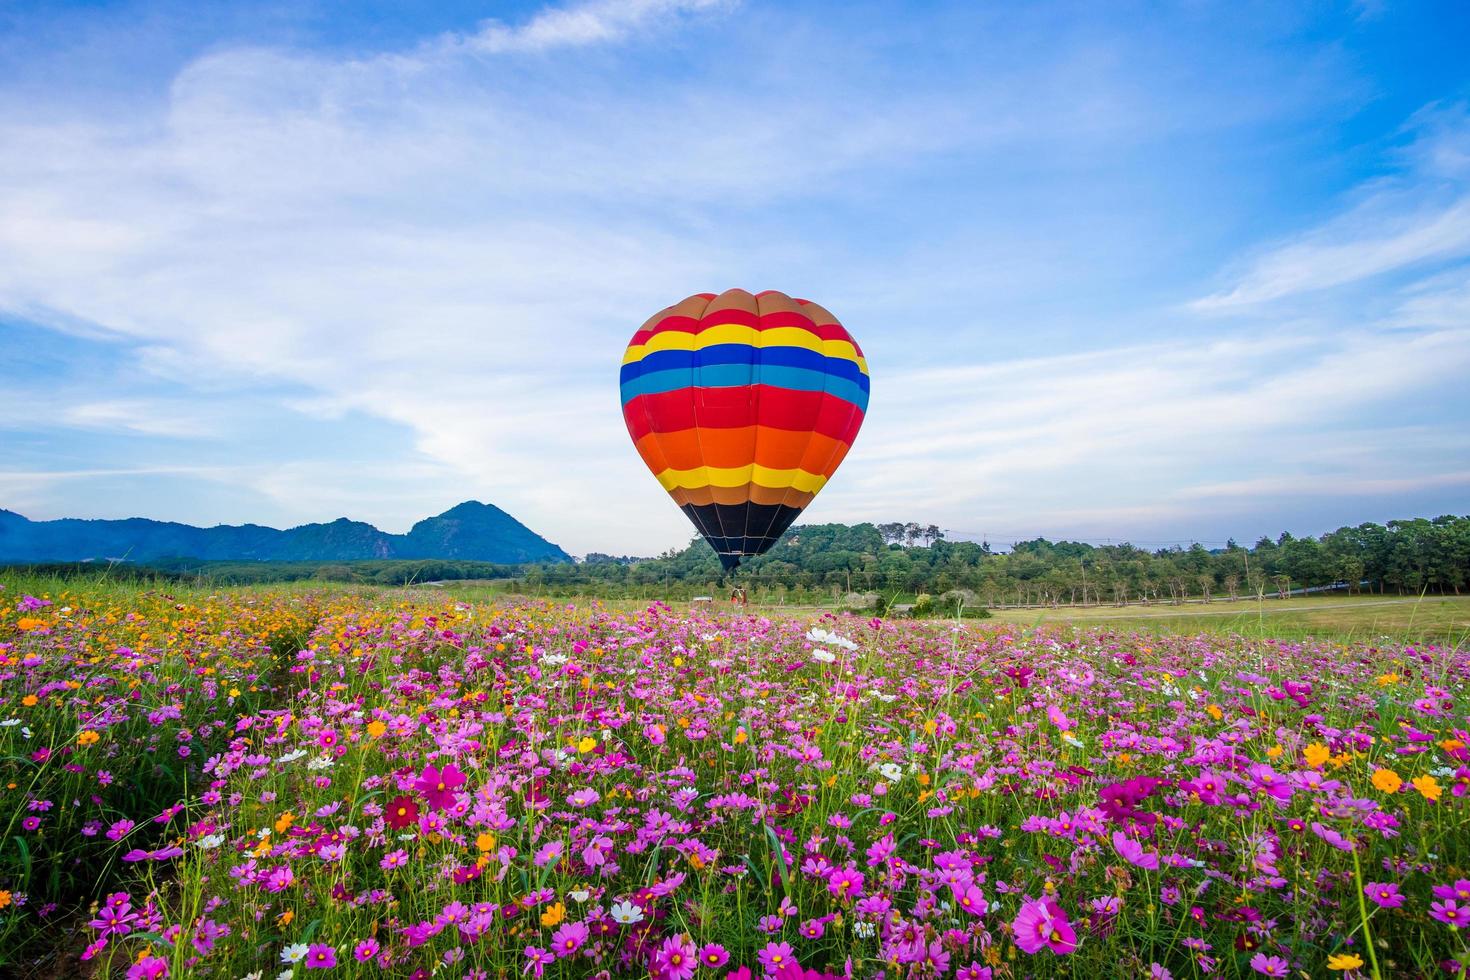 hete luchtballon die op gebied van bloemen landt foto